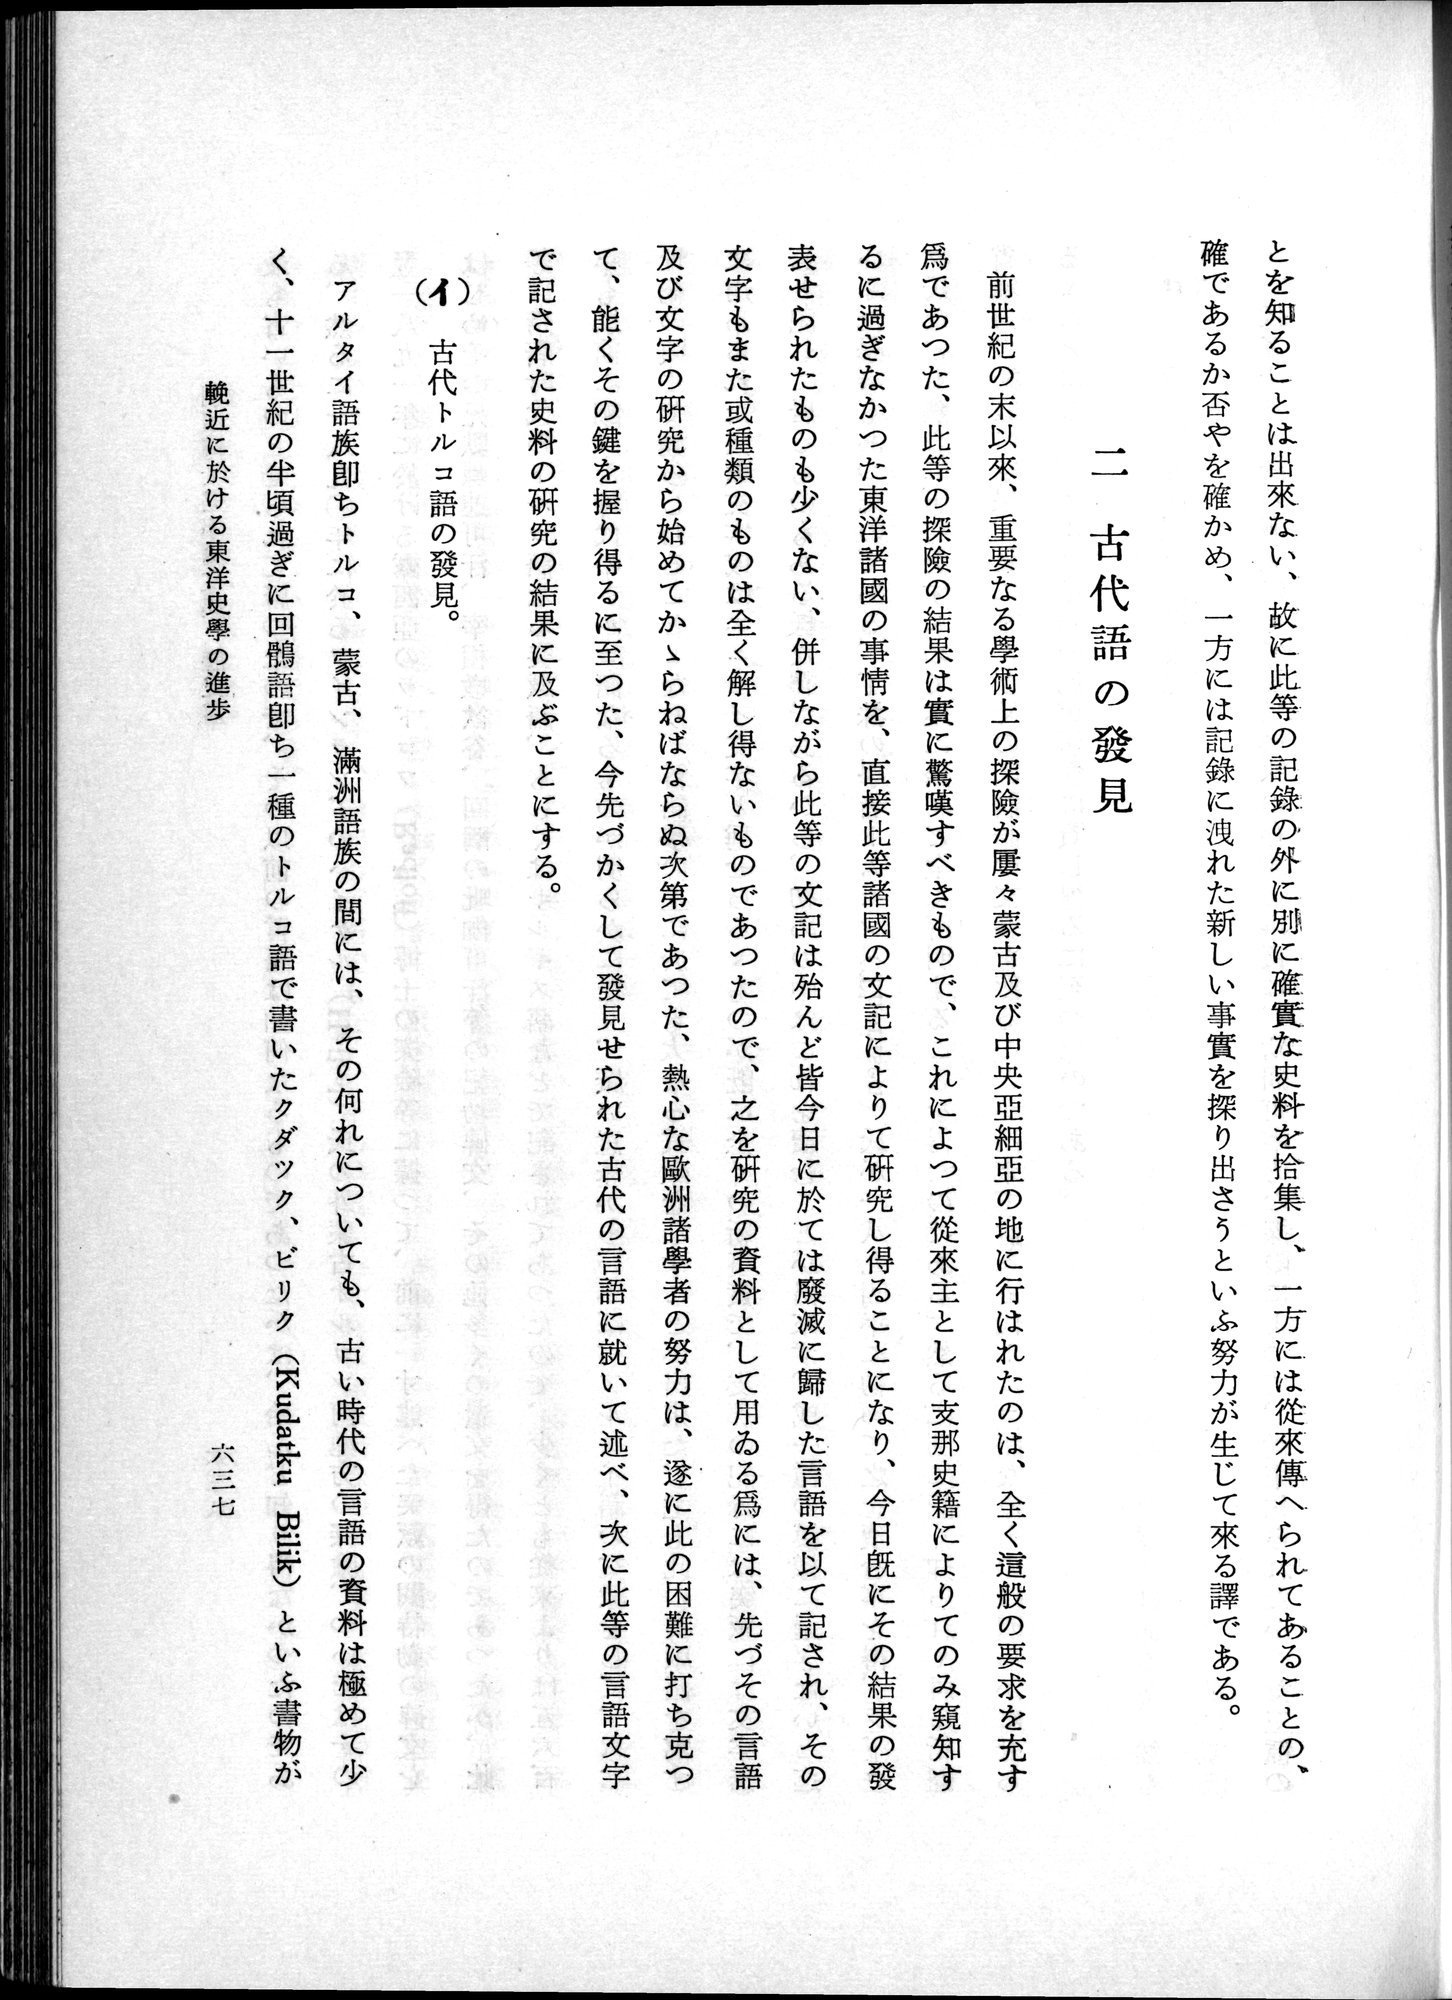 羽田博士史学論文集 : vol.1 / Page 675 (Grayscale High Resolution Image)